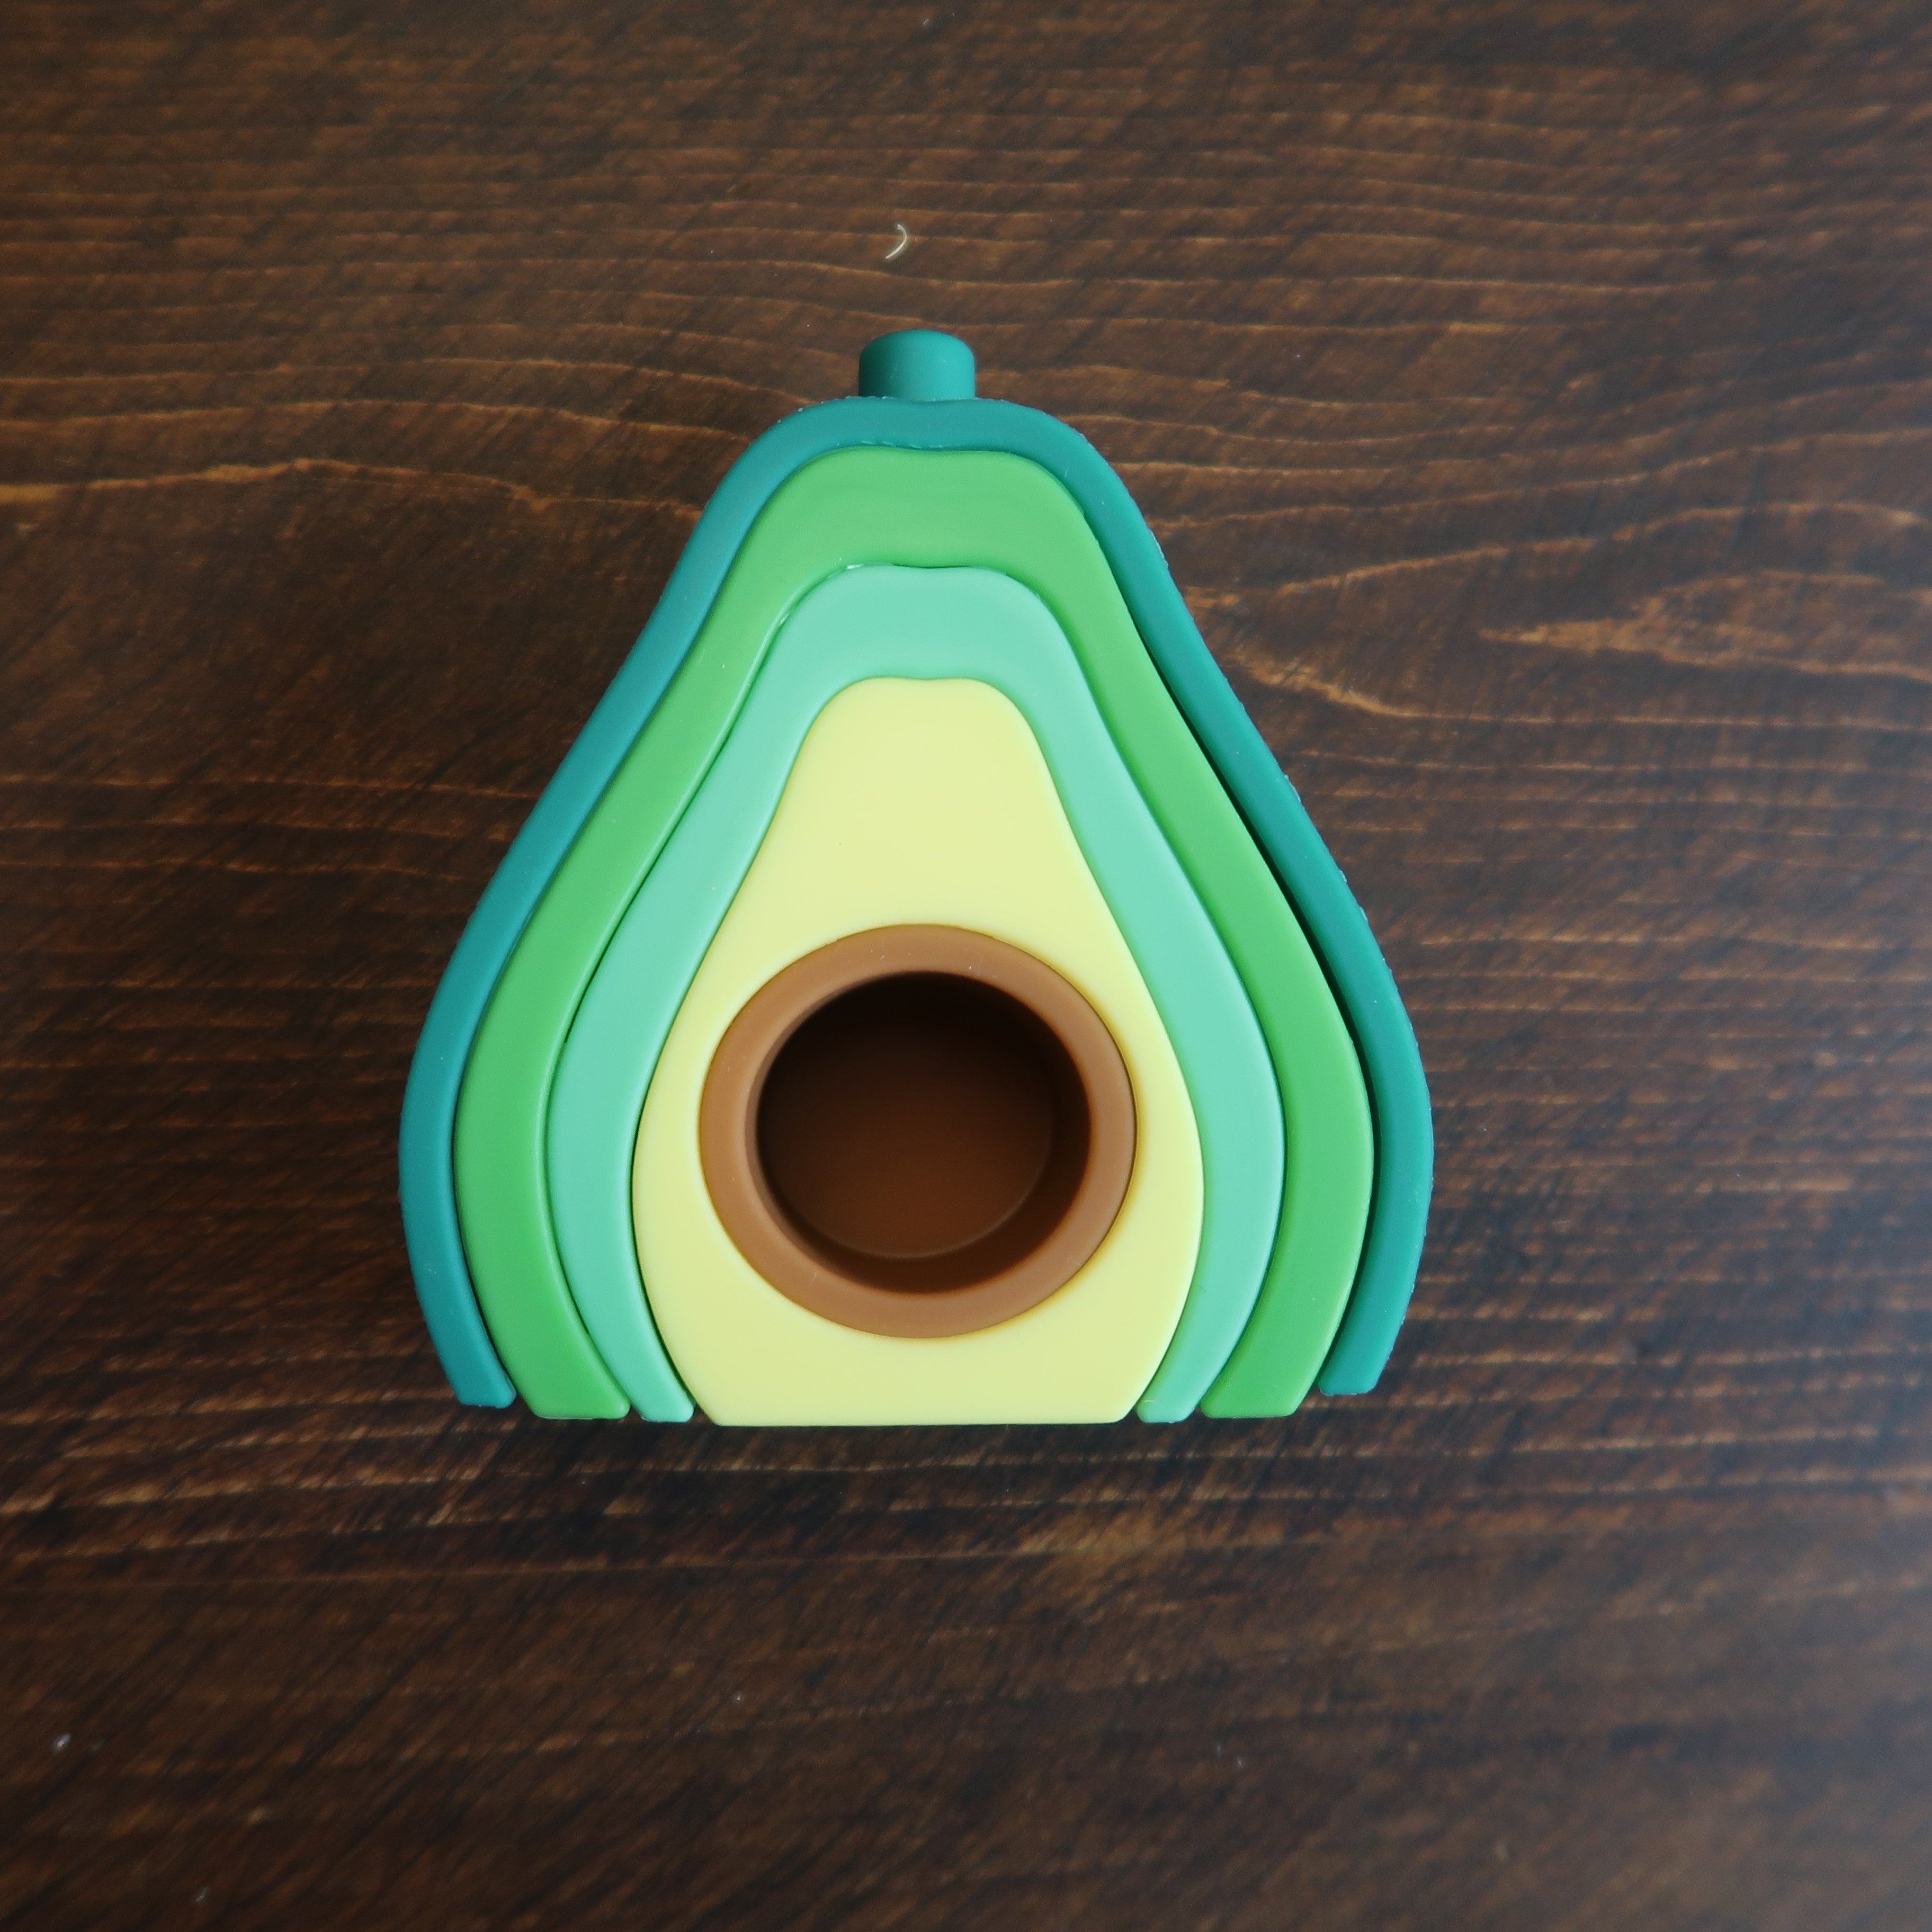 Eko + Co - Silicone Avocado Teether Toy